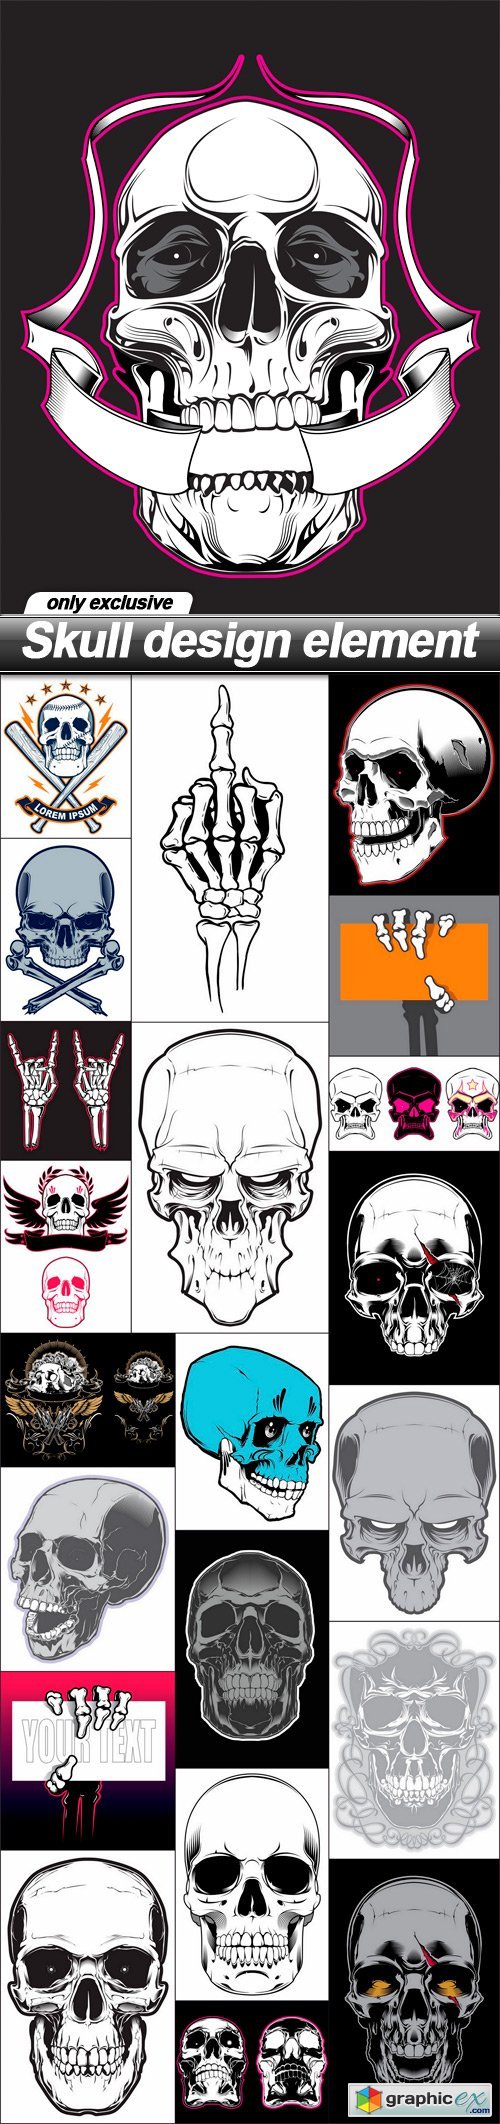 Skull design element - 22 EPS